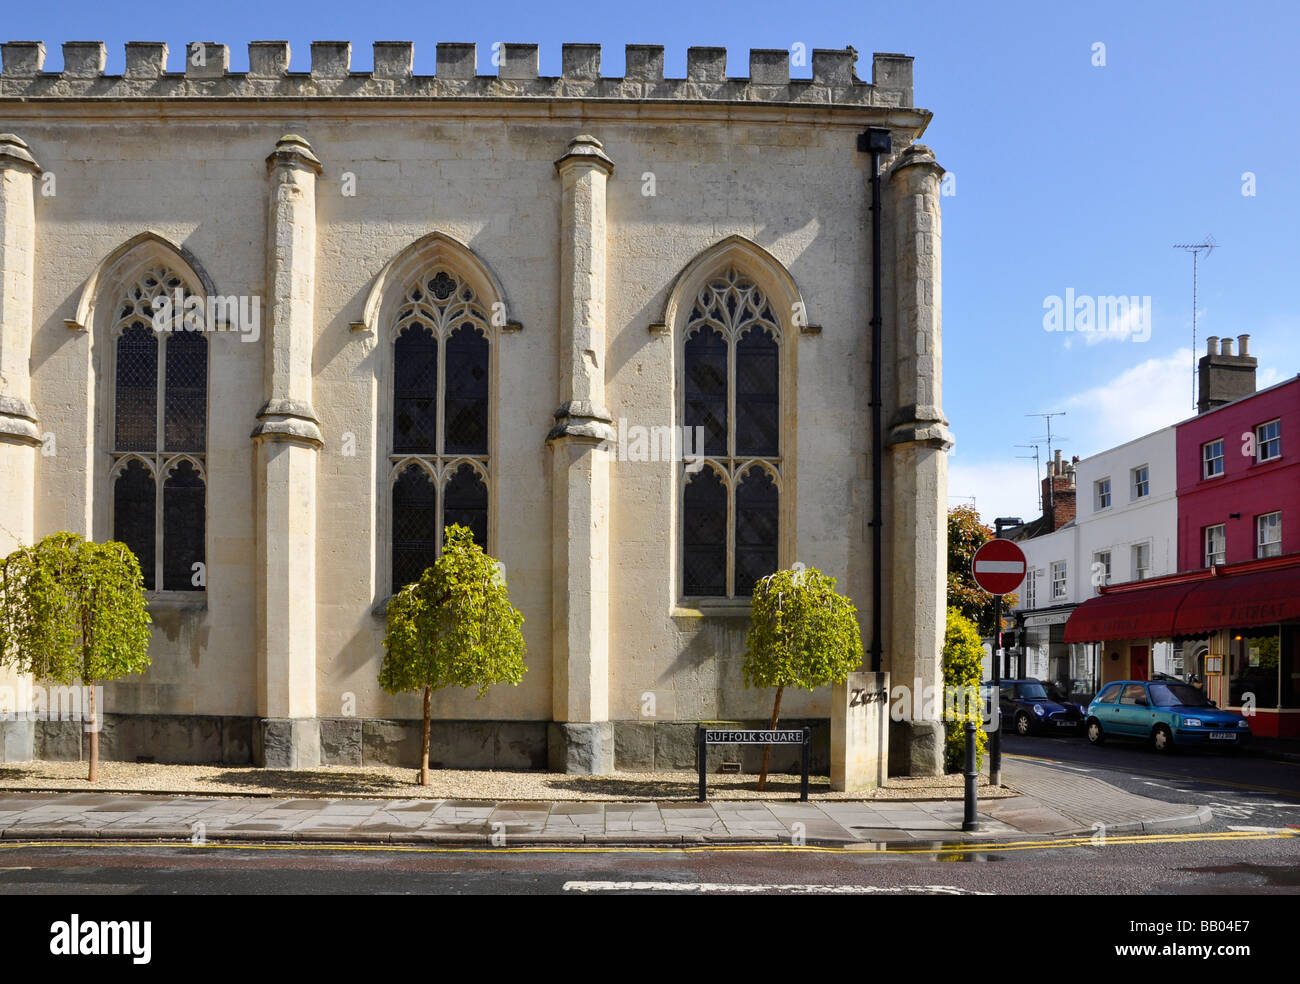 "Le quartier des Suffolks de Cheltenham, Angleterre - un restaurant "Zizzi' converti d'une ancienne église Banque D'Images